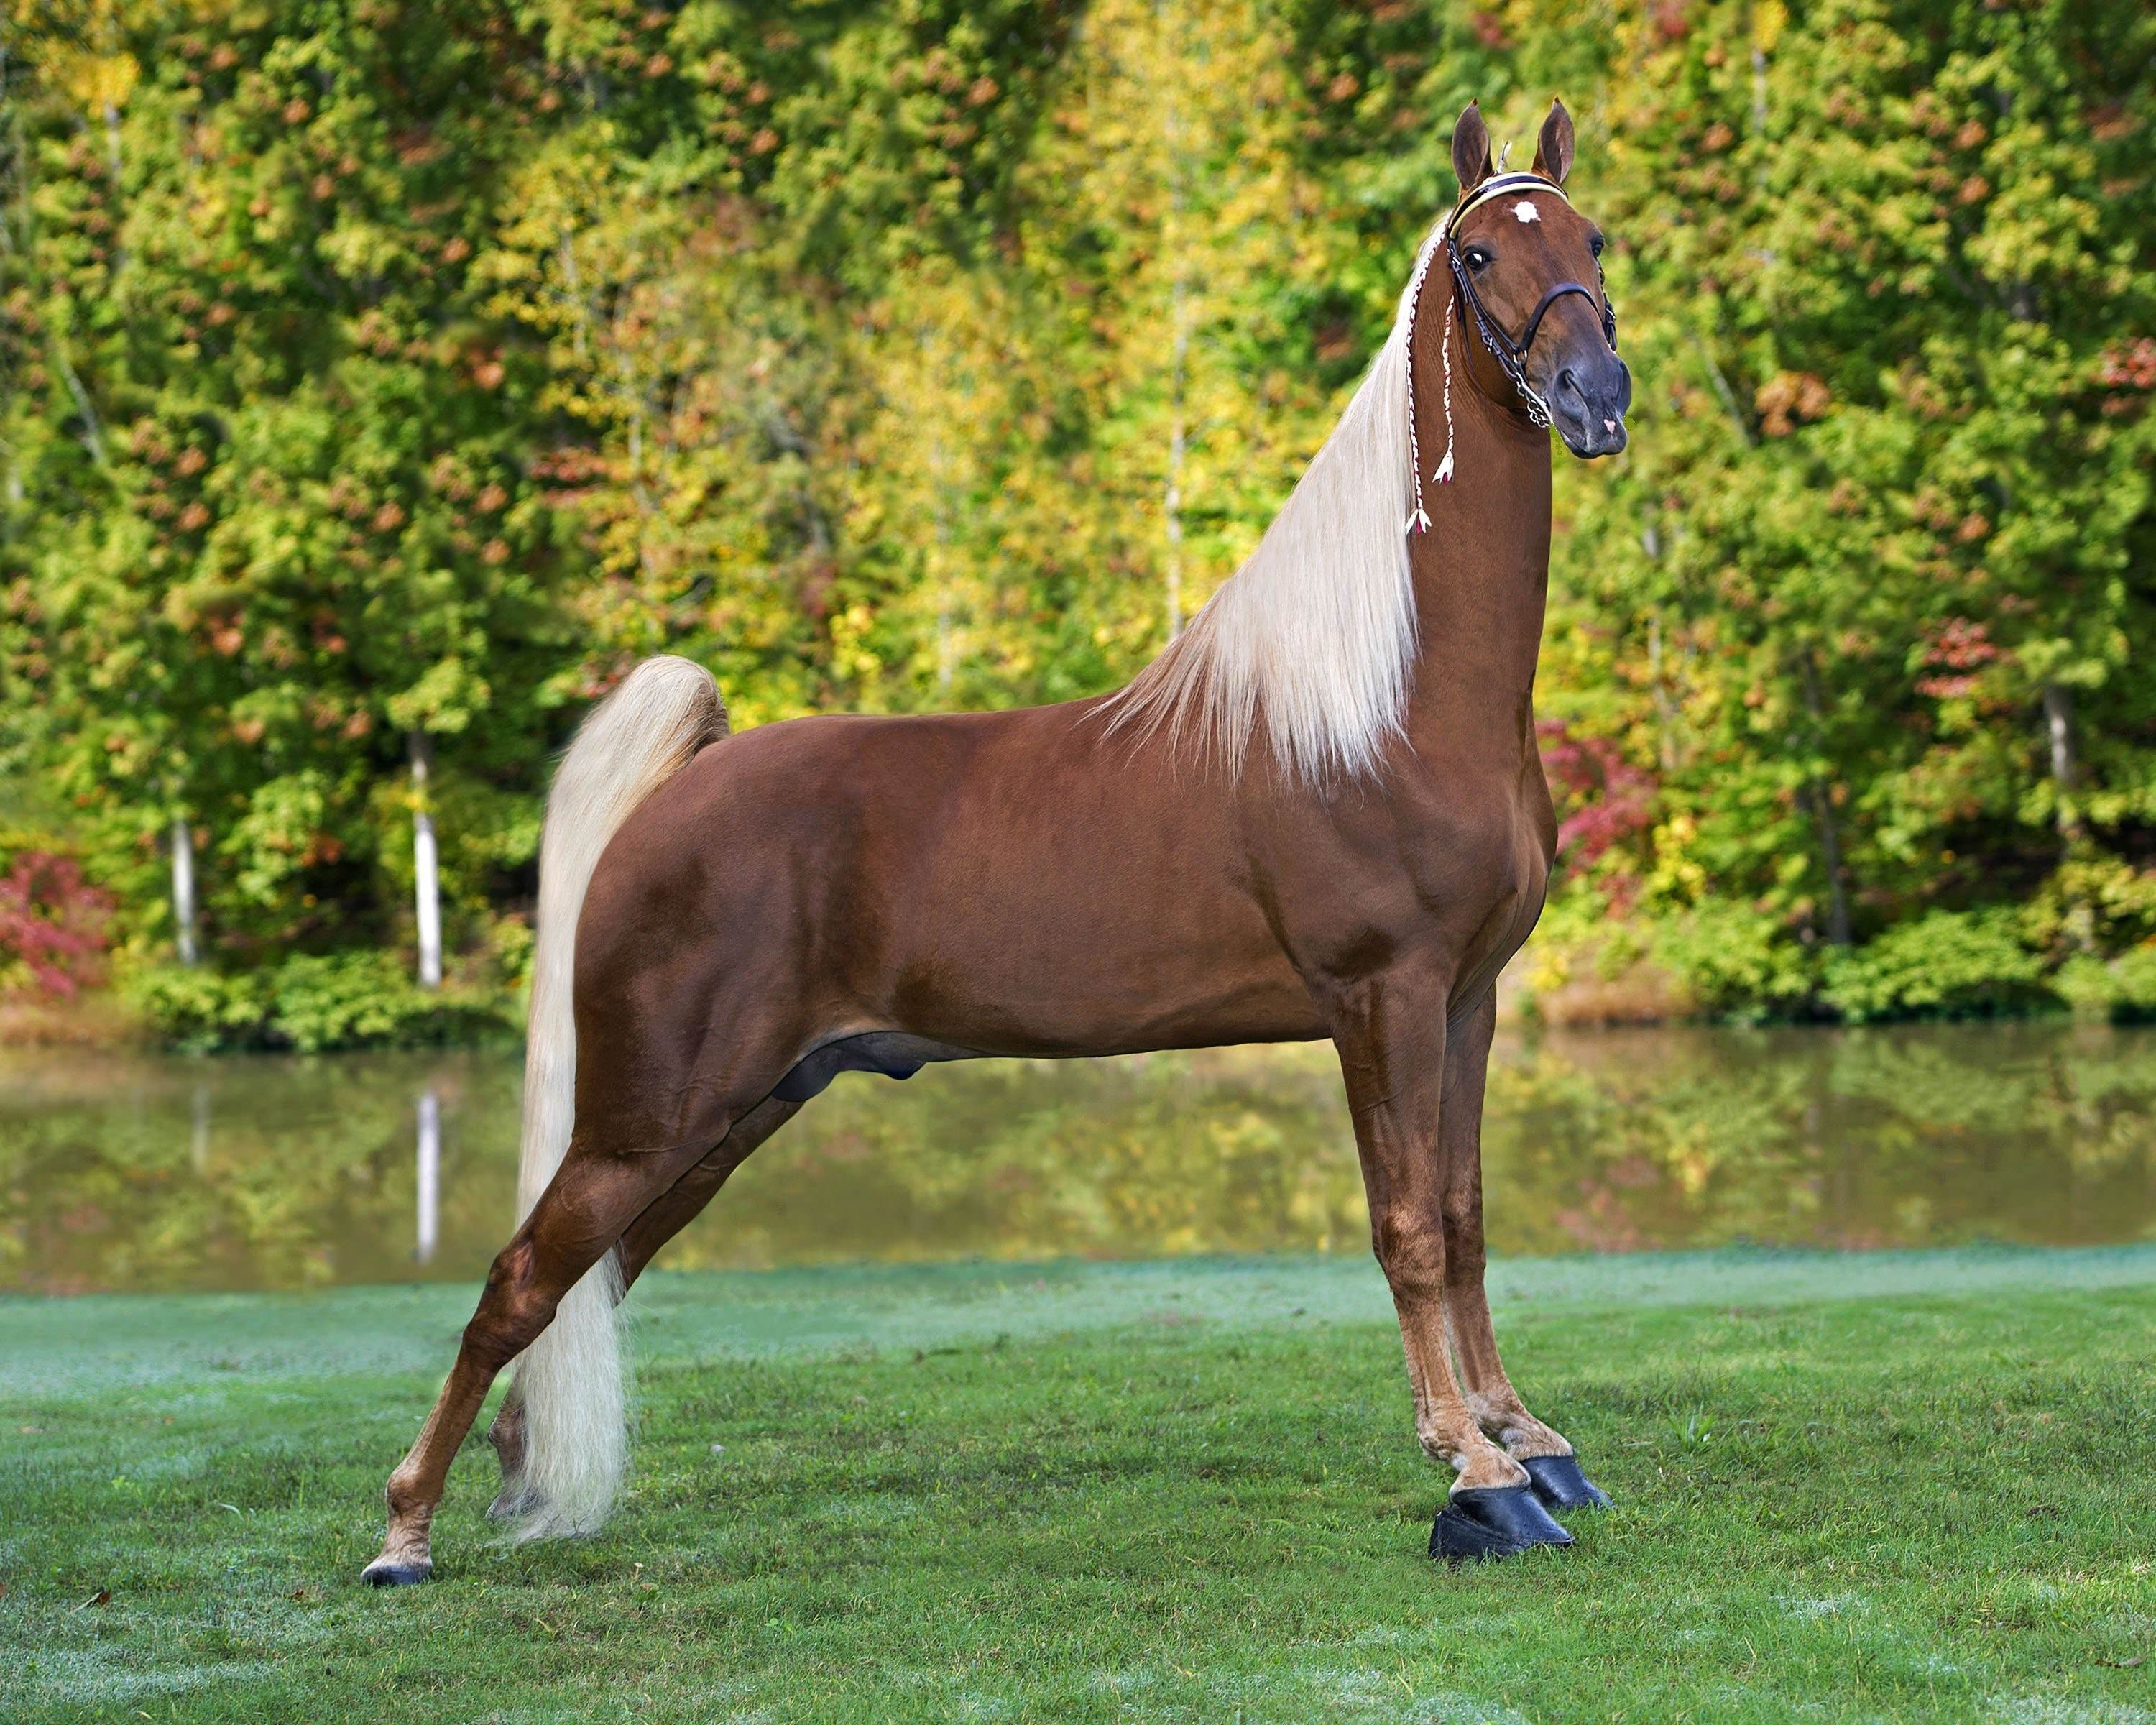 Породистый конь. Теннесси Уокер лошадь. Лошадь породы Теннесси Уокер. Теннессийская прогулочная лошадь. Теннессийская порода лошадей.